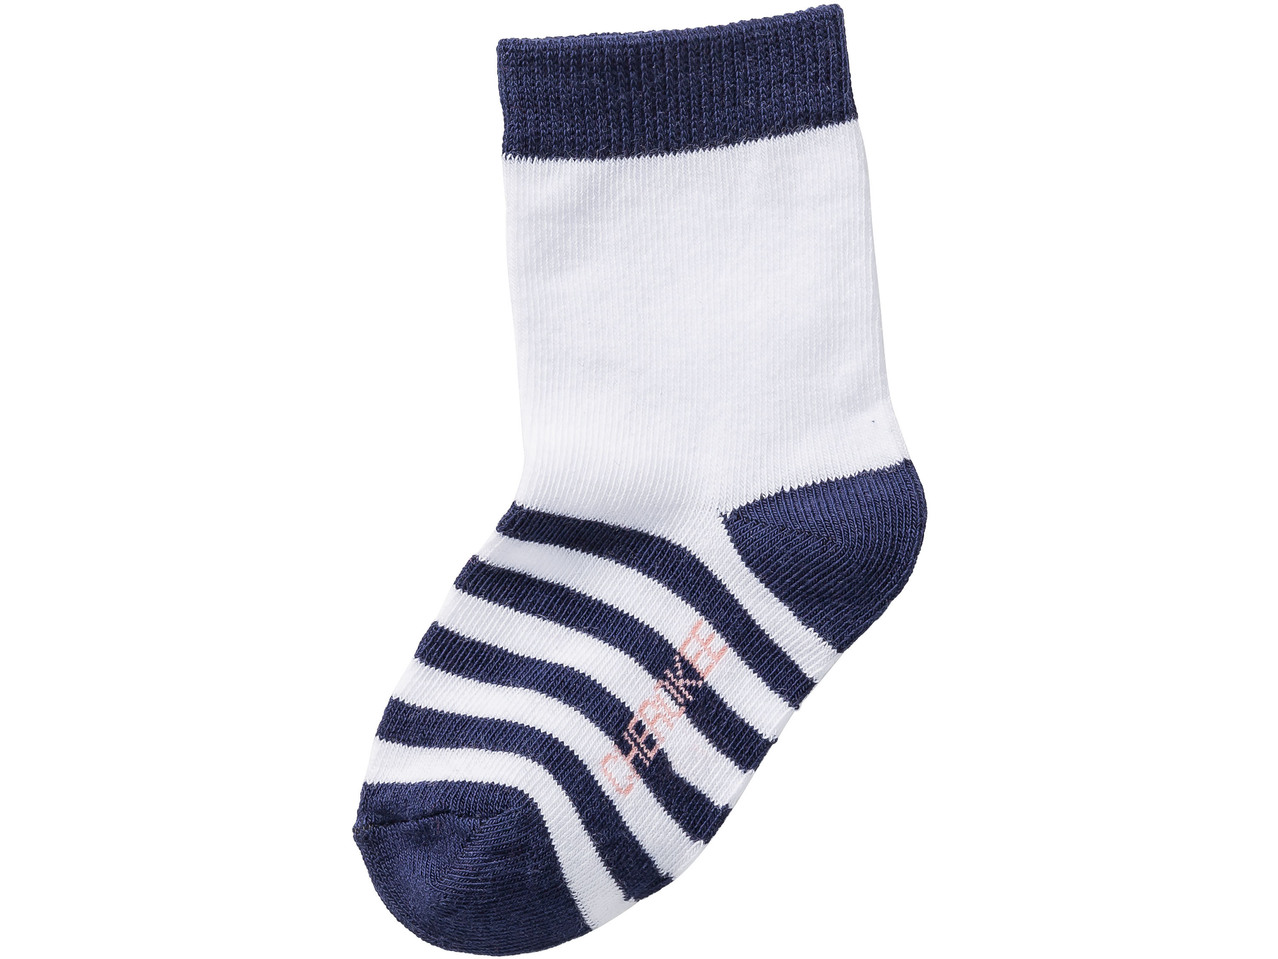 Girls' Socks, 3 pairs